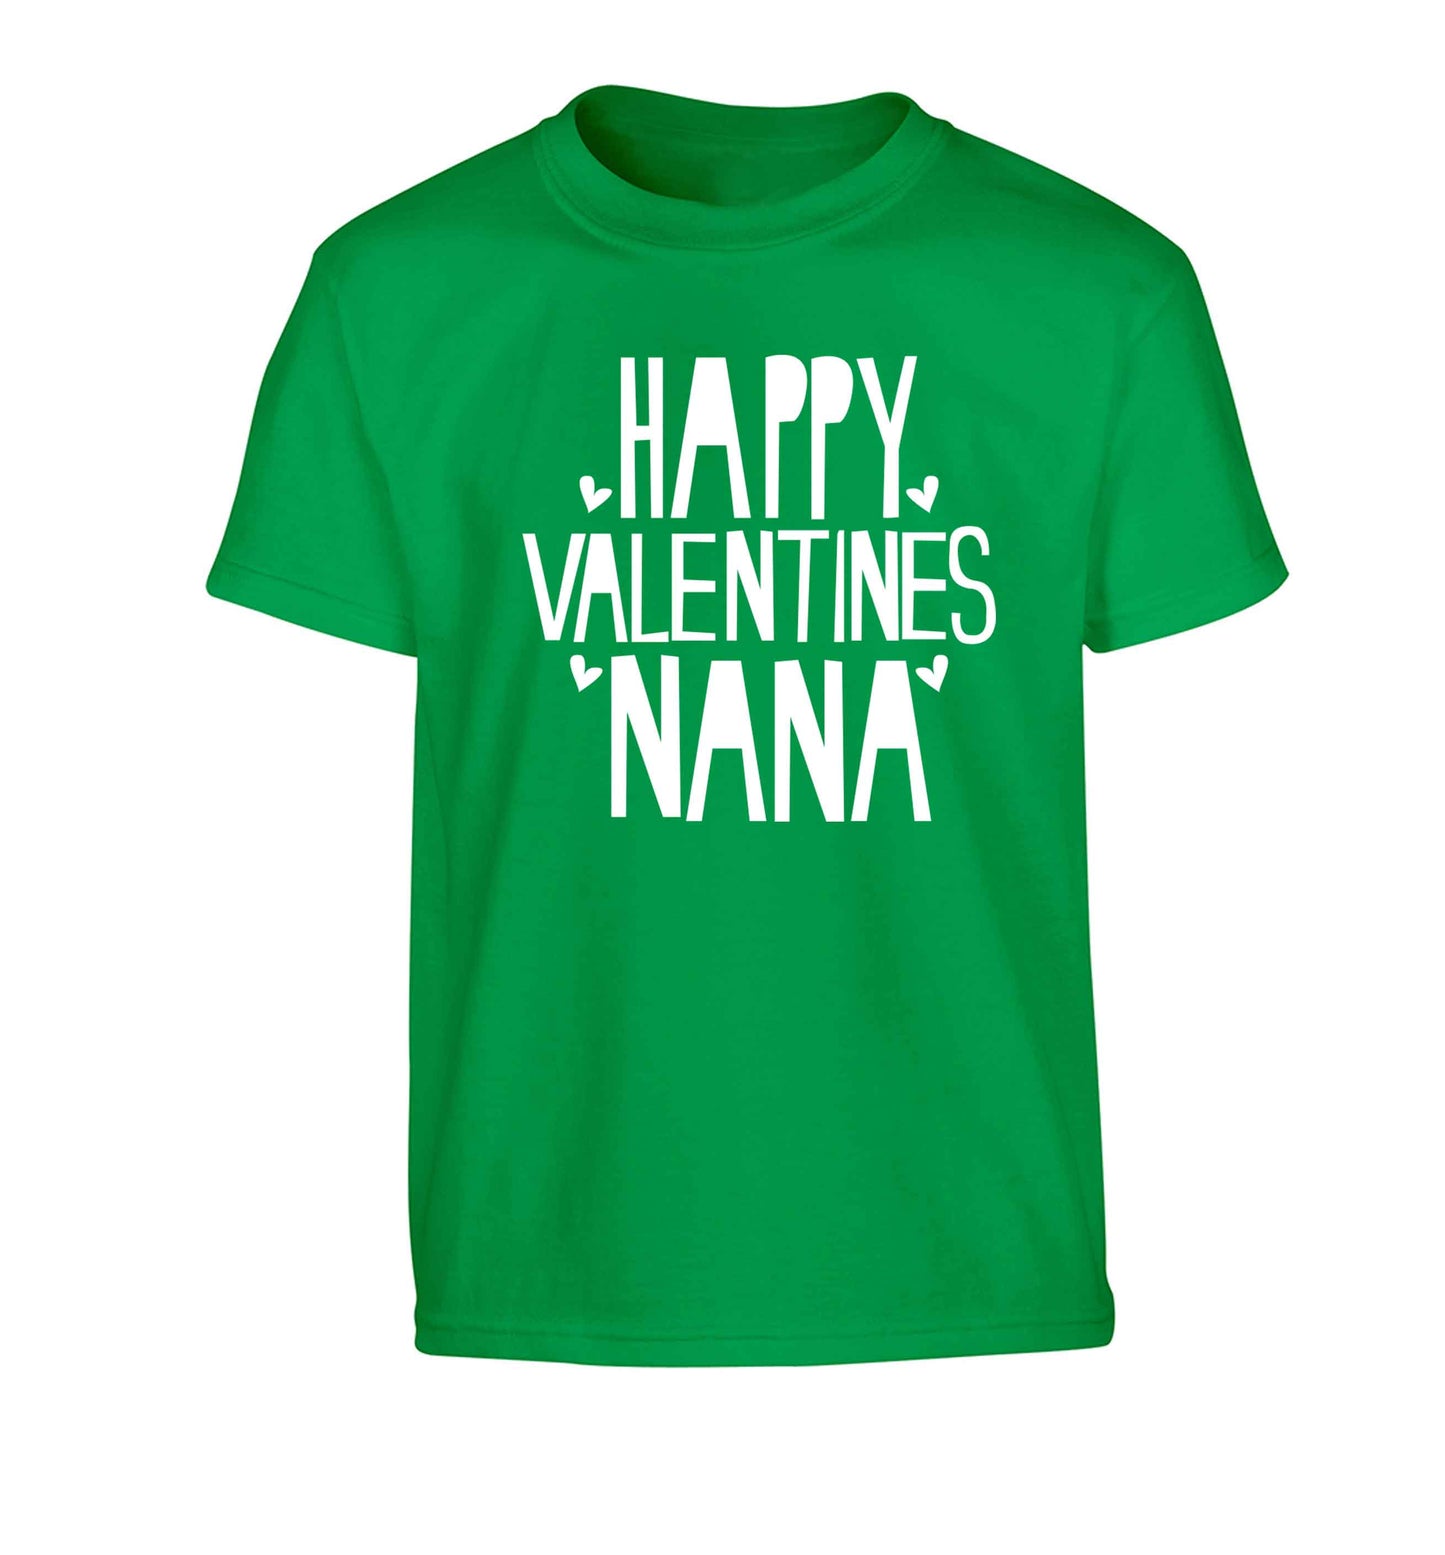 Happy valentines nana Children's green Tshirt 12-13 Years